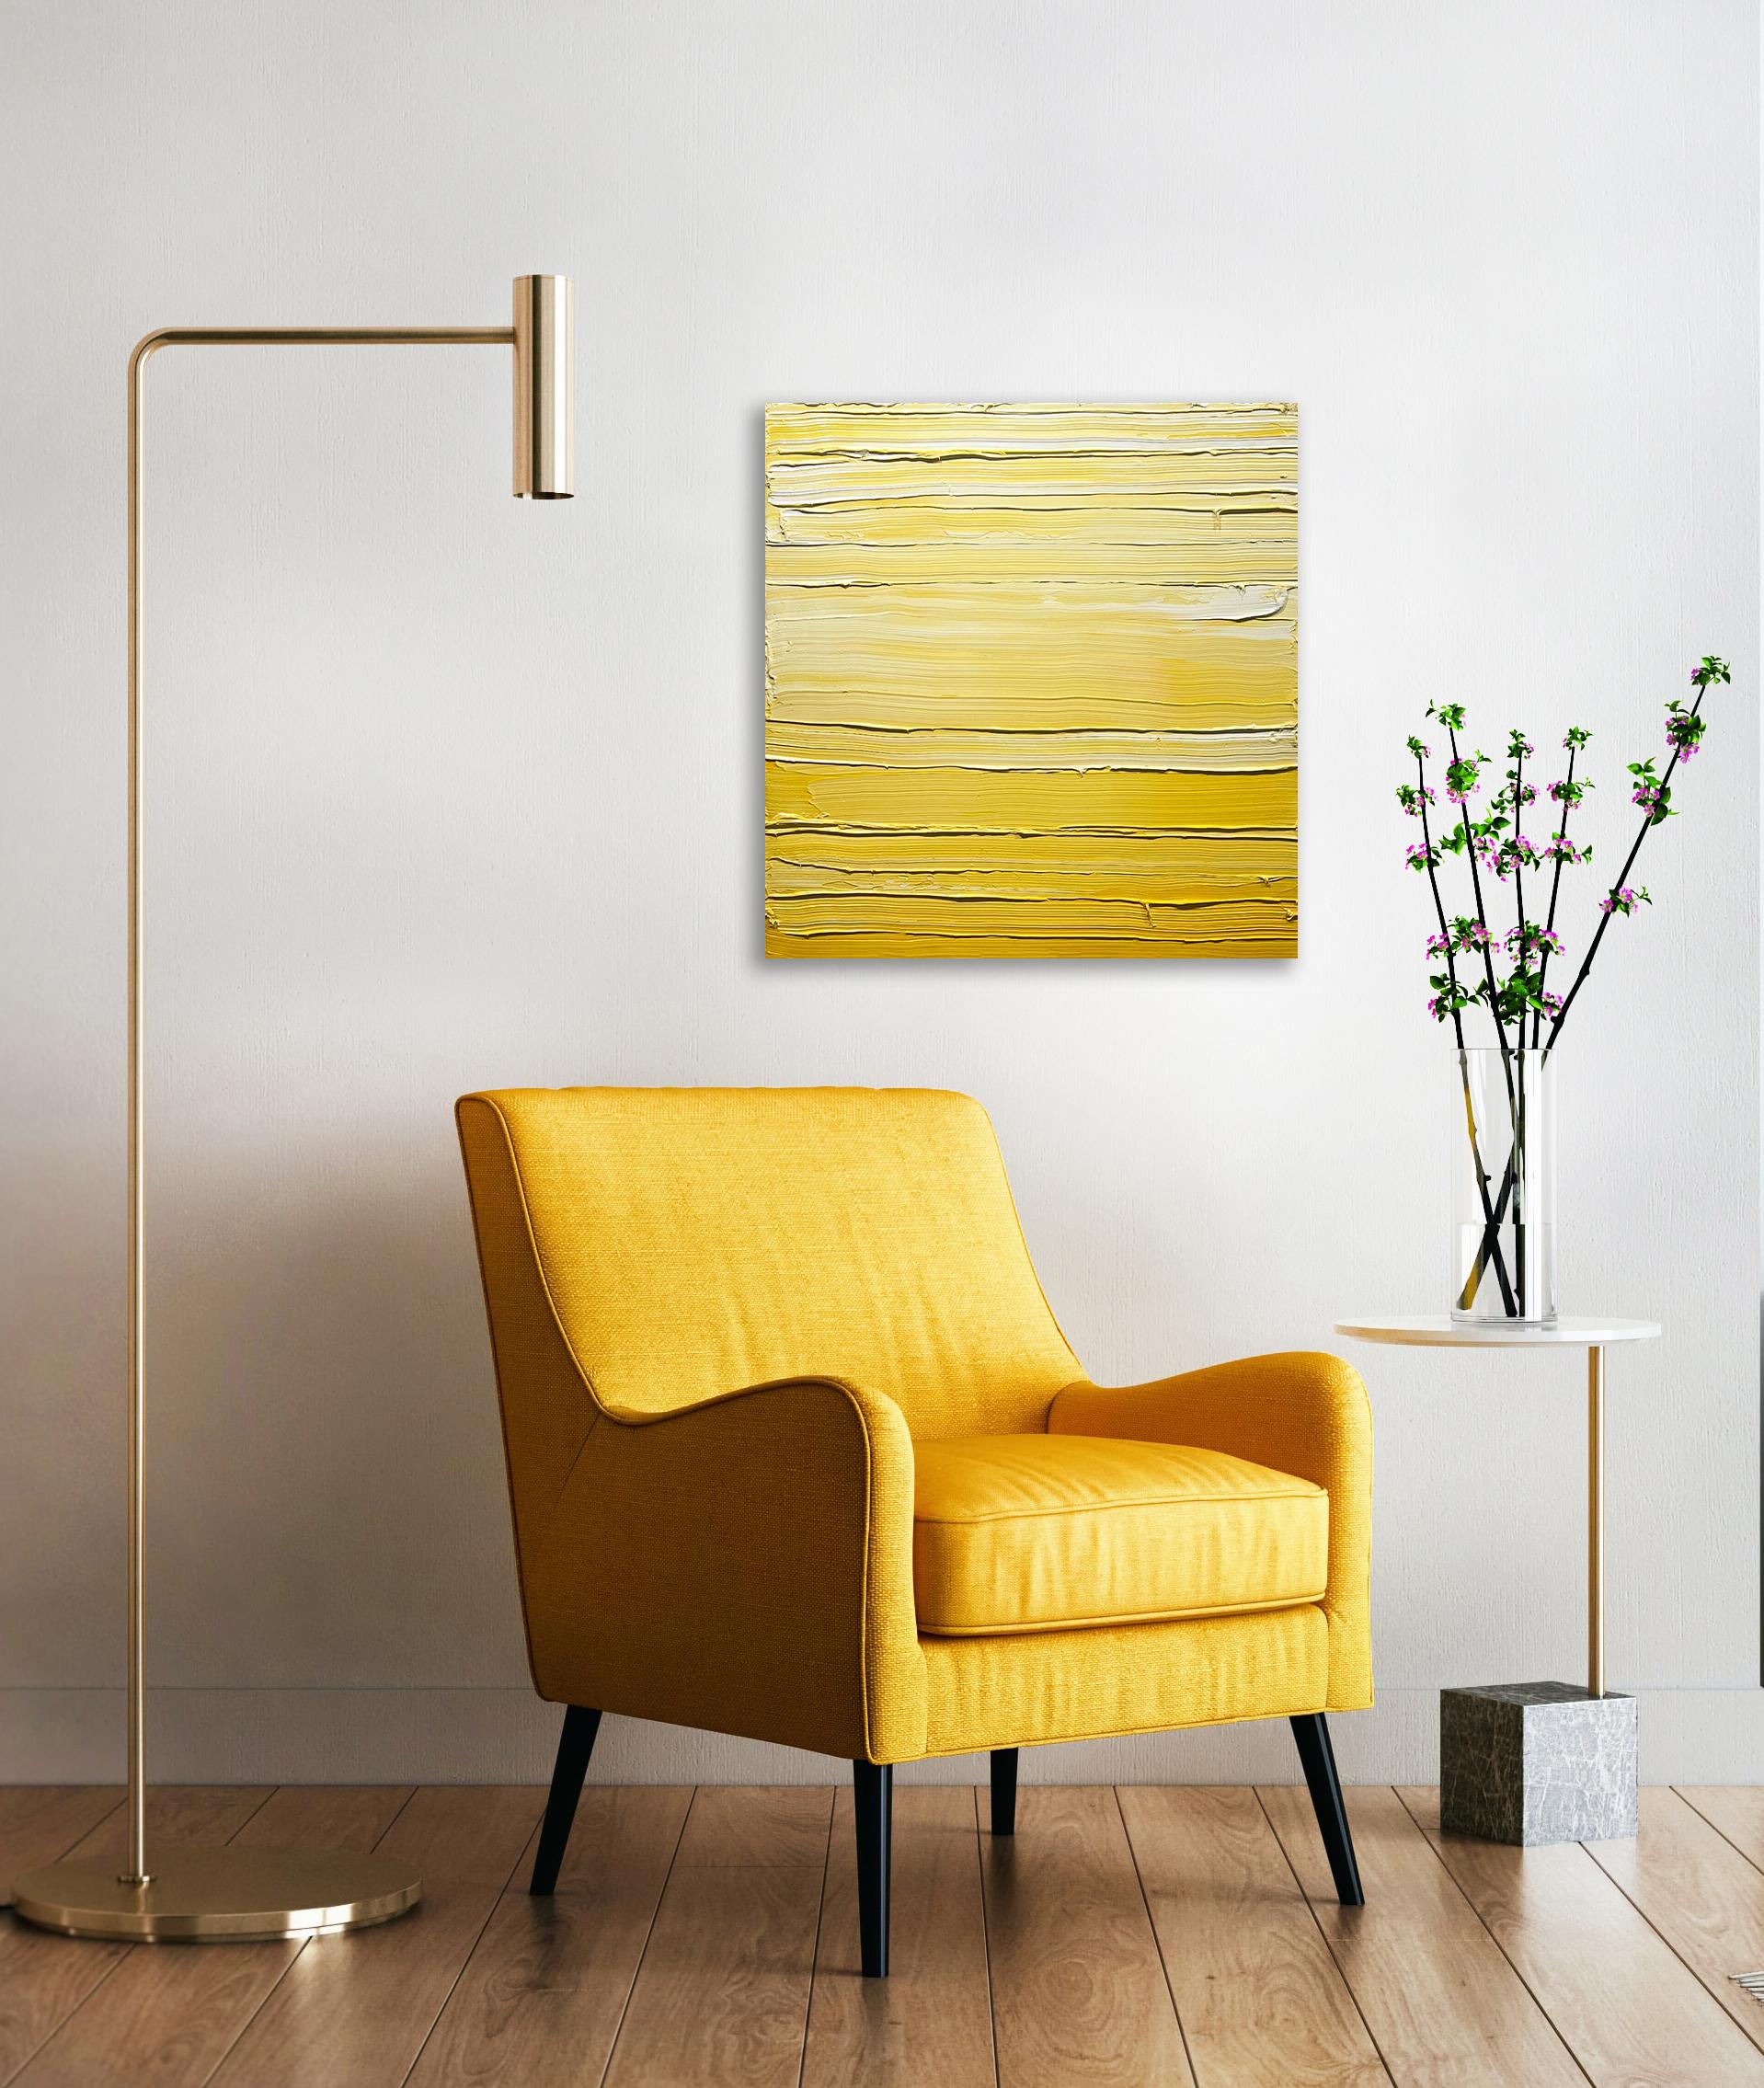 Cette peinture abstraite contemporaine de Teodora Guererra présente une palette de jaune et de blanc éclatants. L'artiste applique d'épaisses couches de peinture jaune et blanche sur le tableau en gestes horizontaux, donnant ainsi de la texture à la